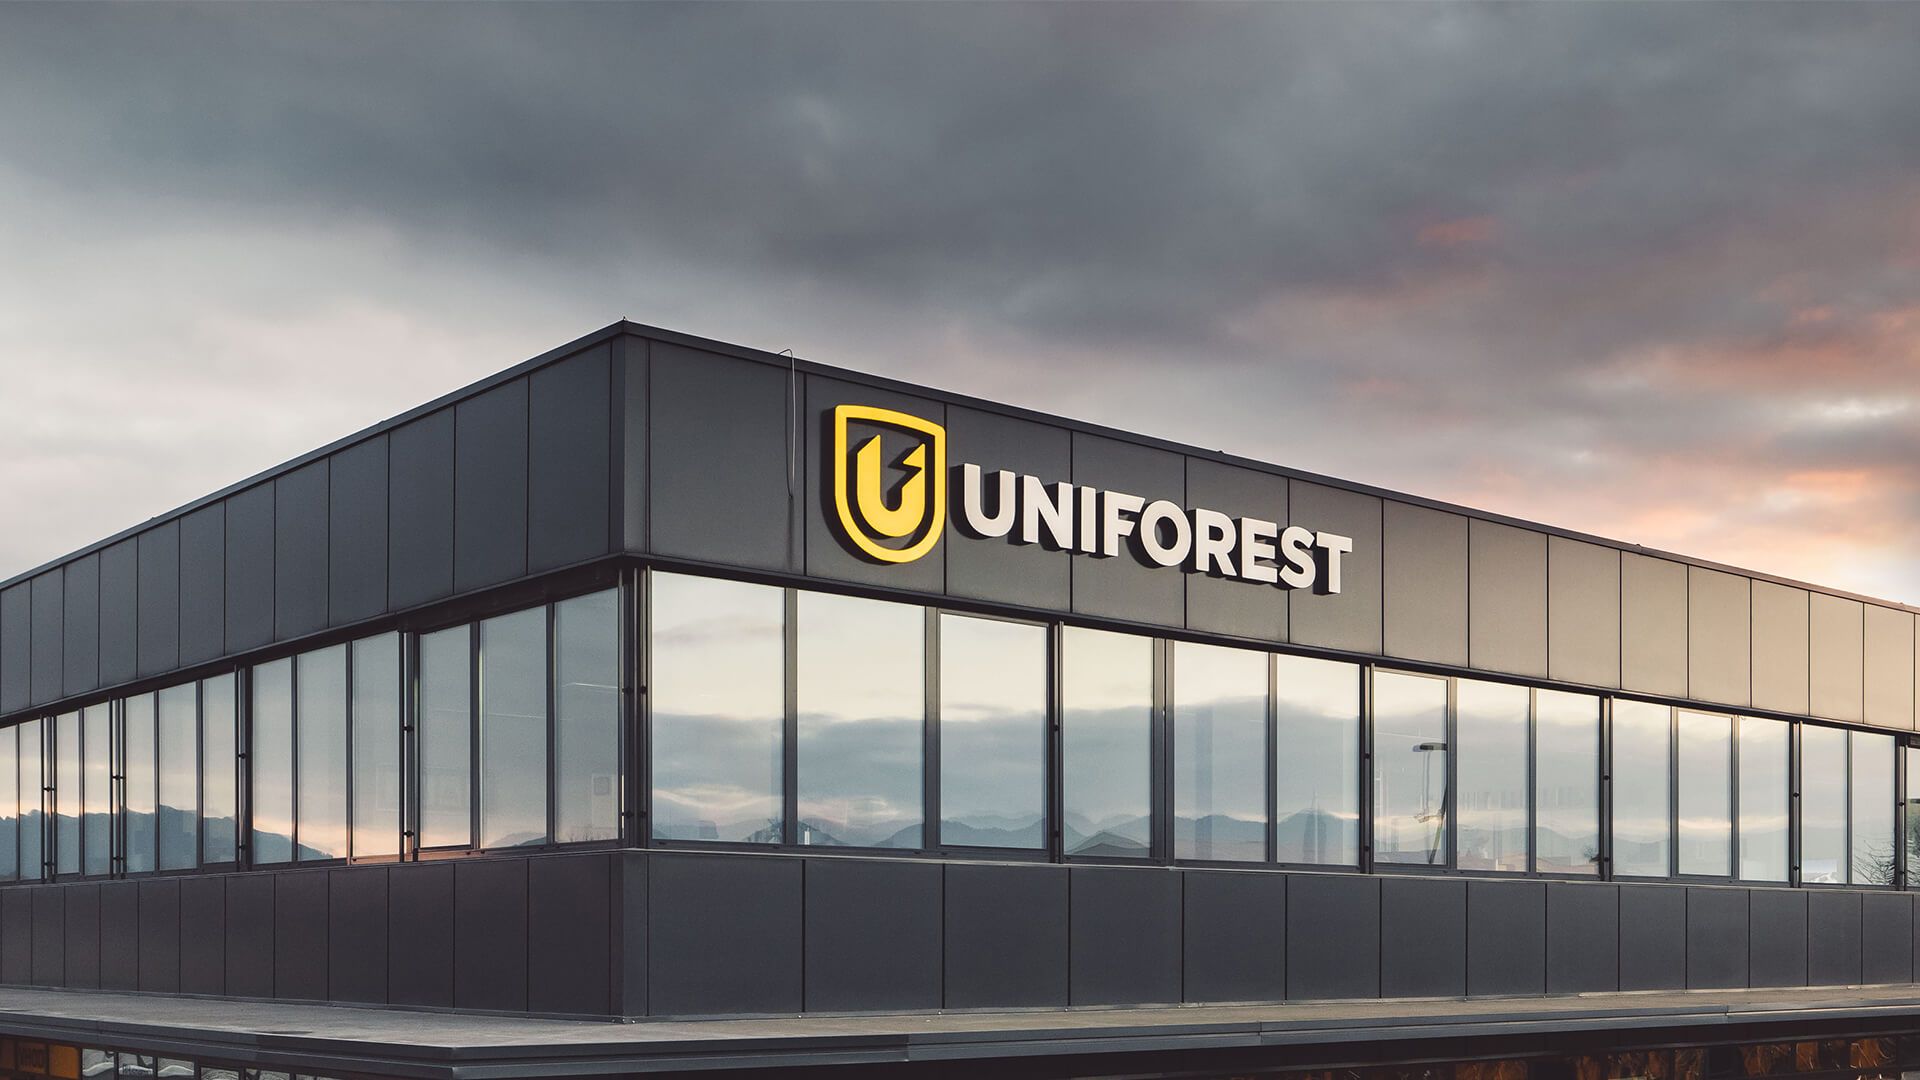 About Uniforest